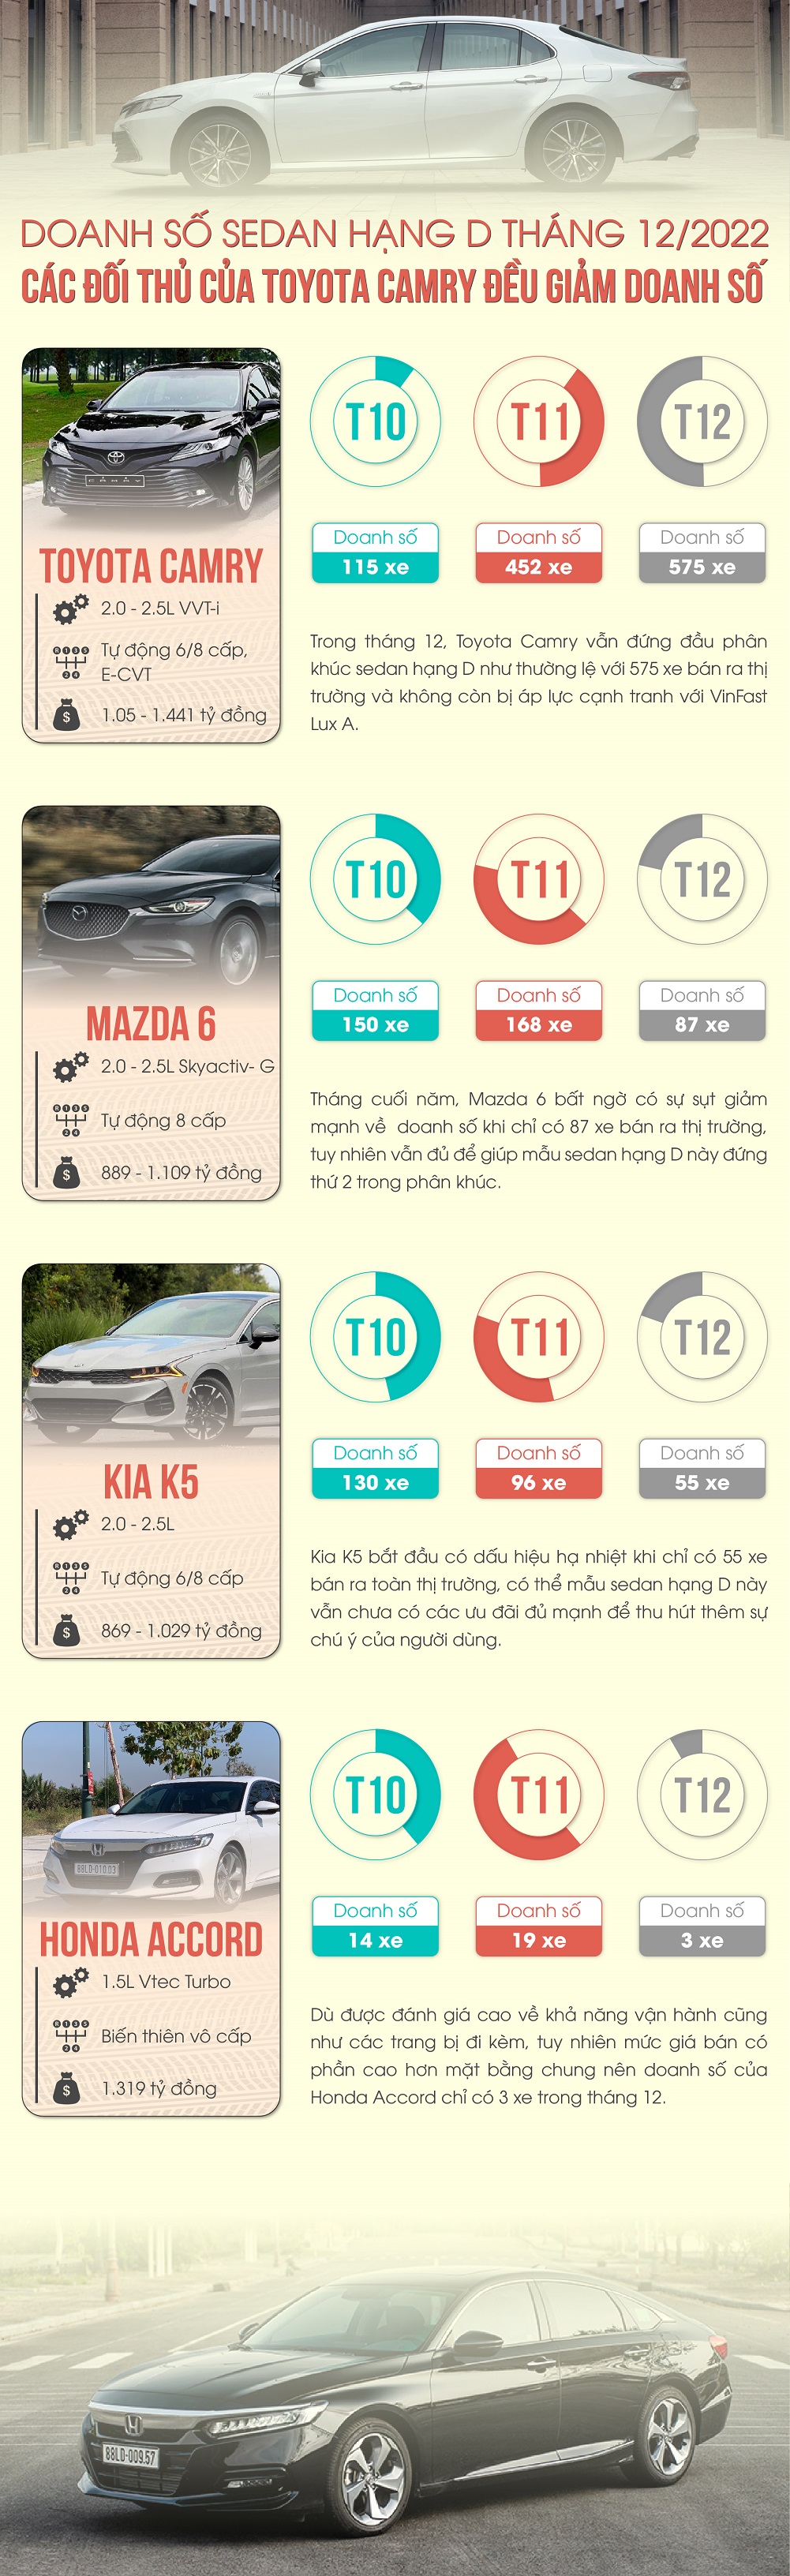 Doanh số tháng 12/2022 phân khúc sedan cỡ D: Toyota Camry là mẫu duy nhất có tăng trưởng